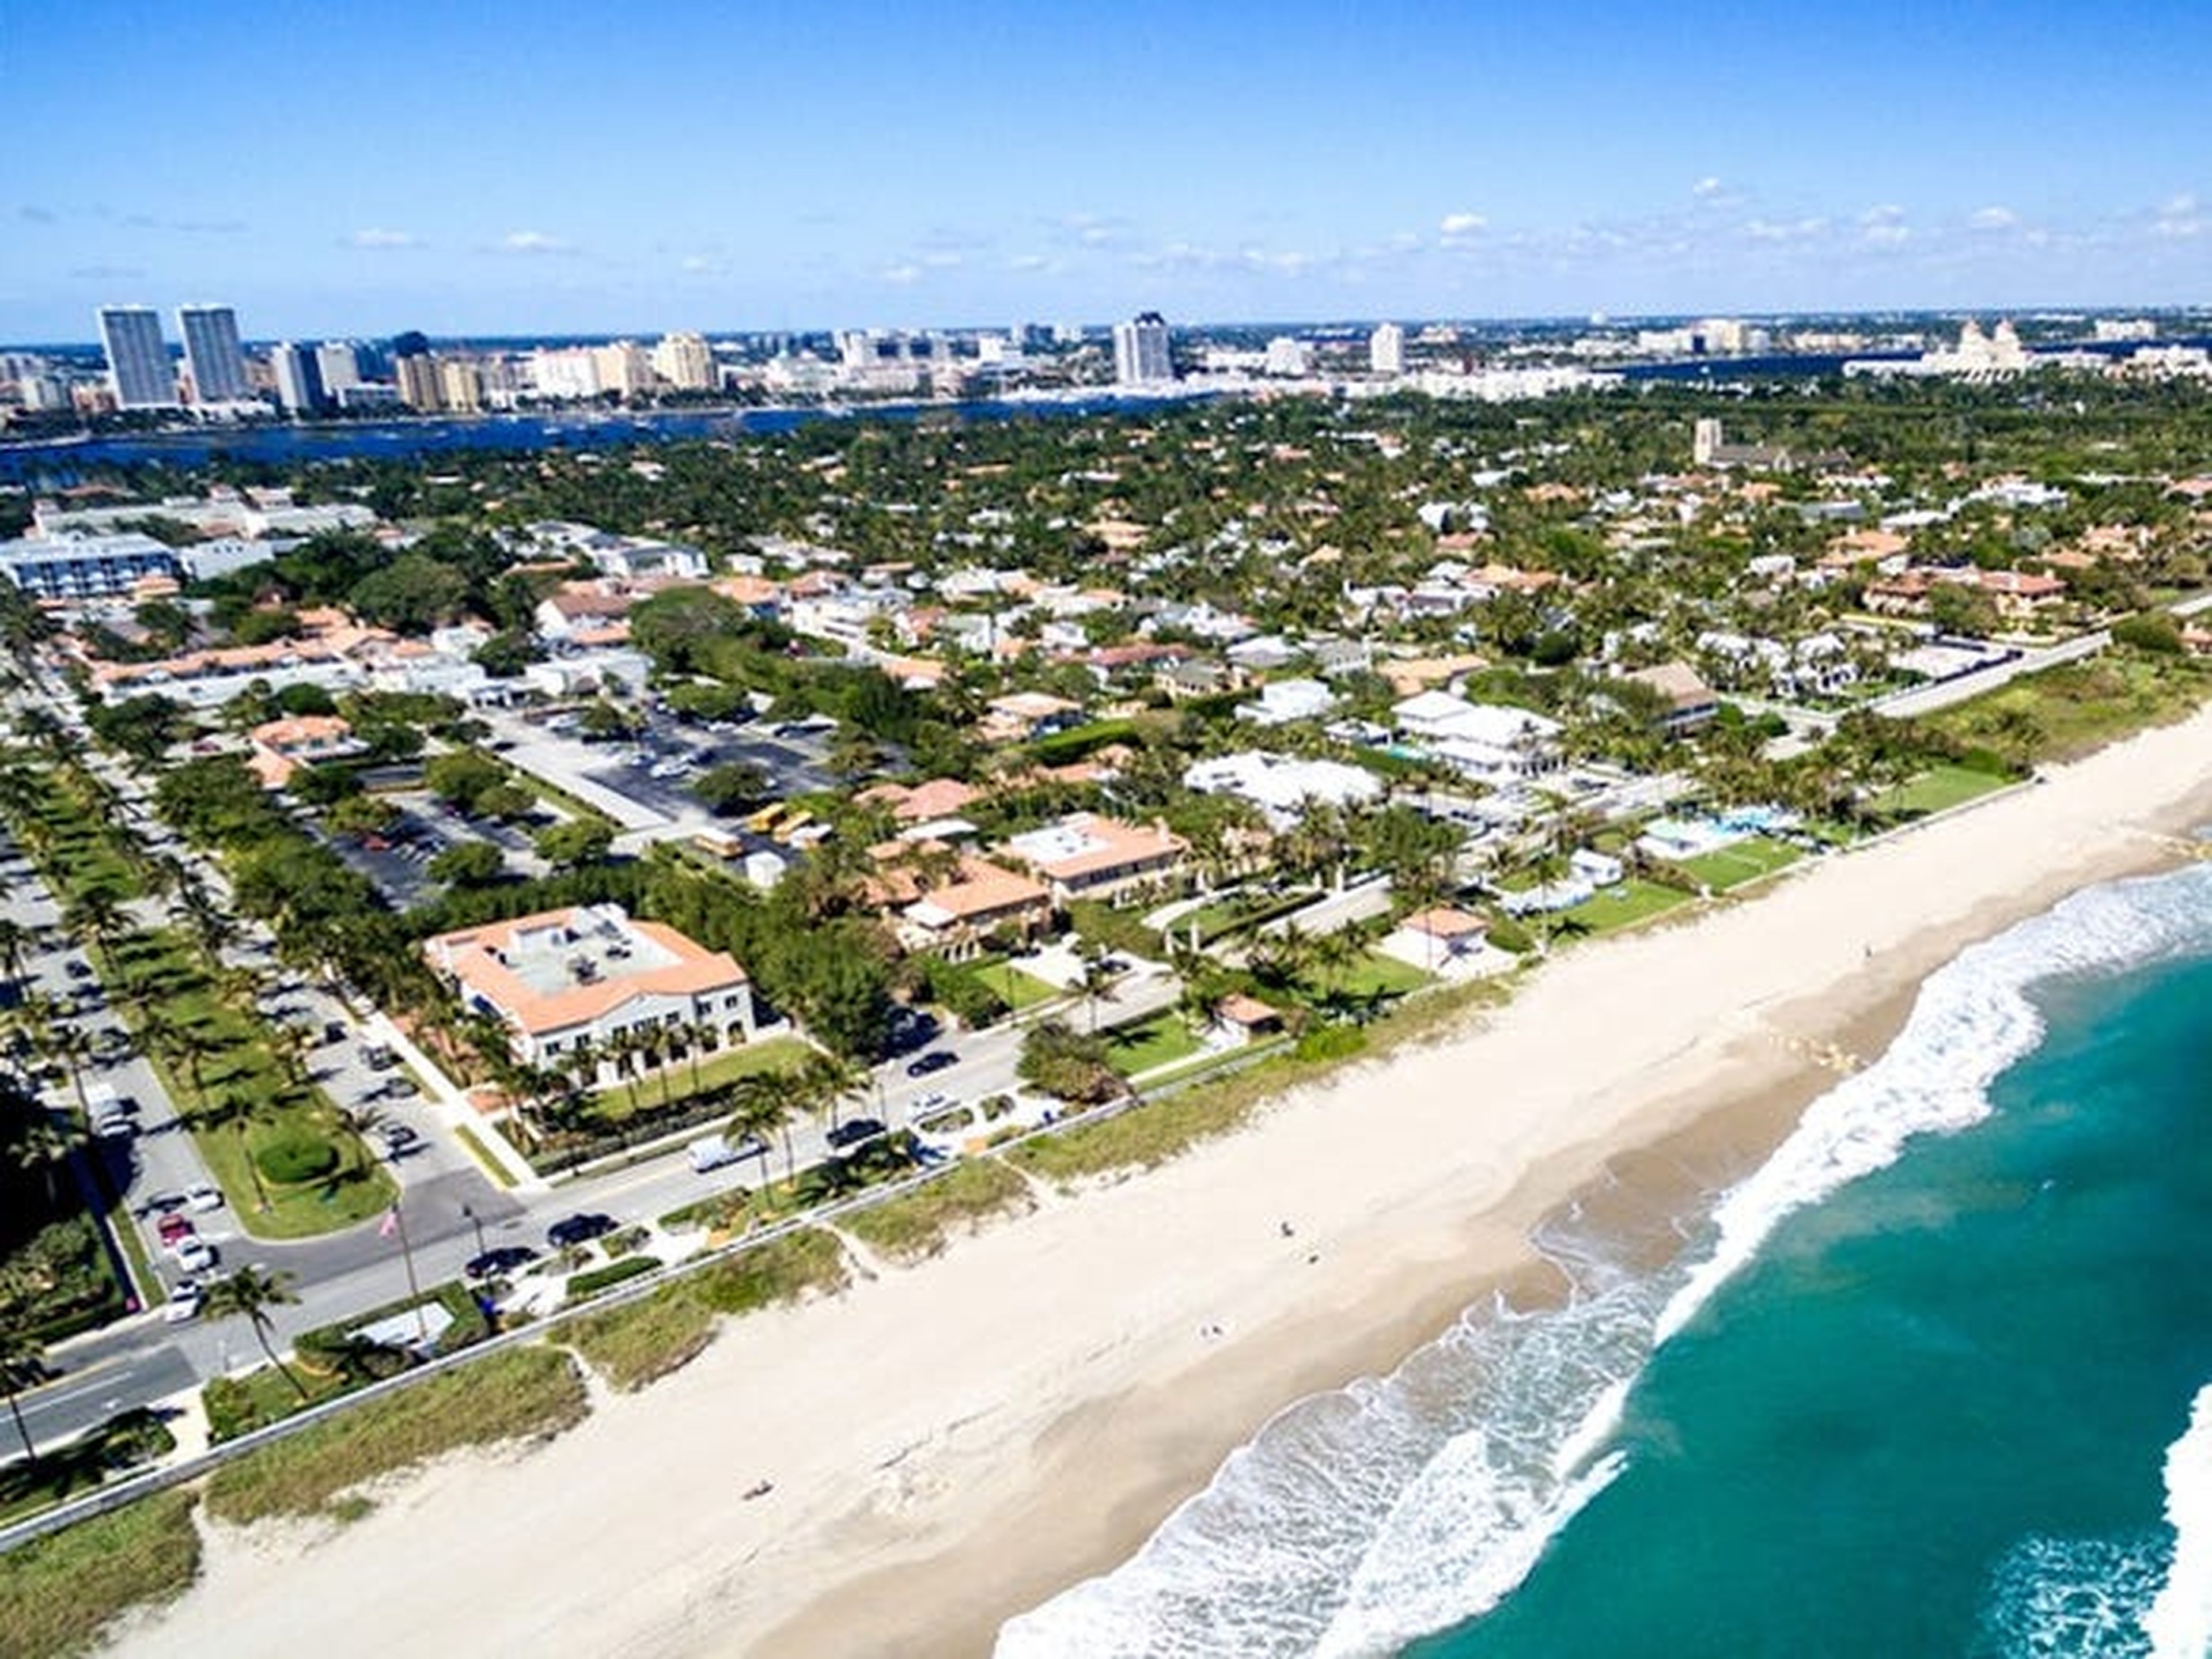 Sus 3 casas cerca de Mar-a-Lago en Palm Beach, Florida, están valoradas en 21 millones de euros